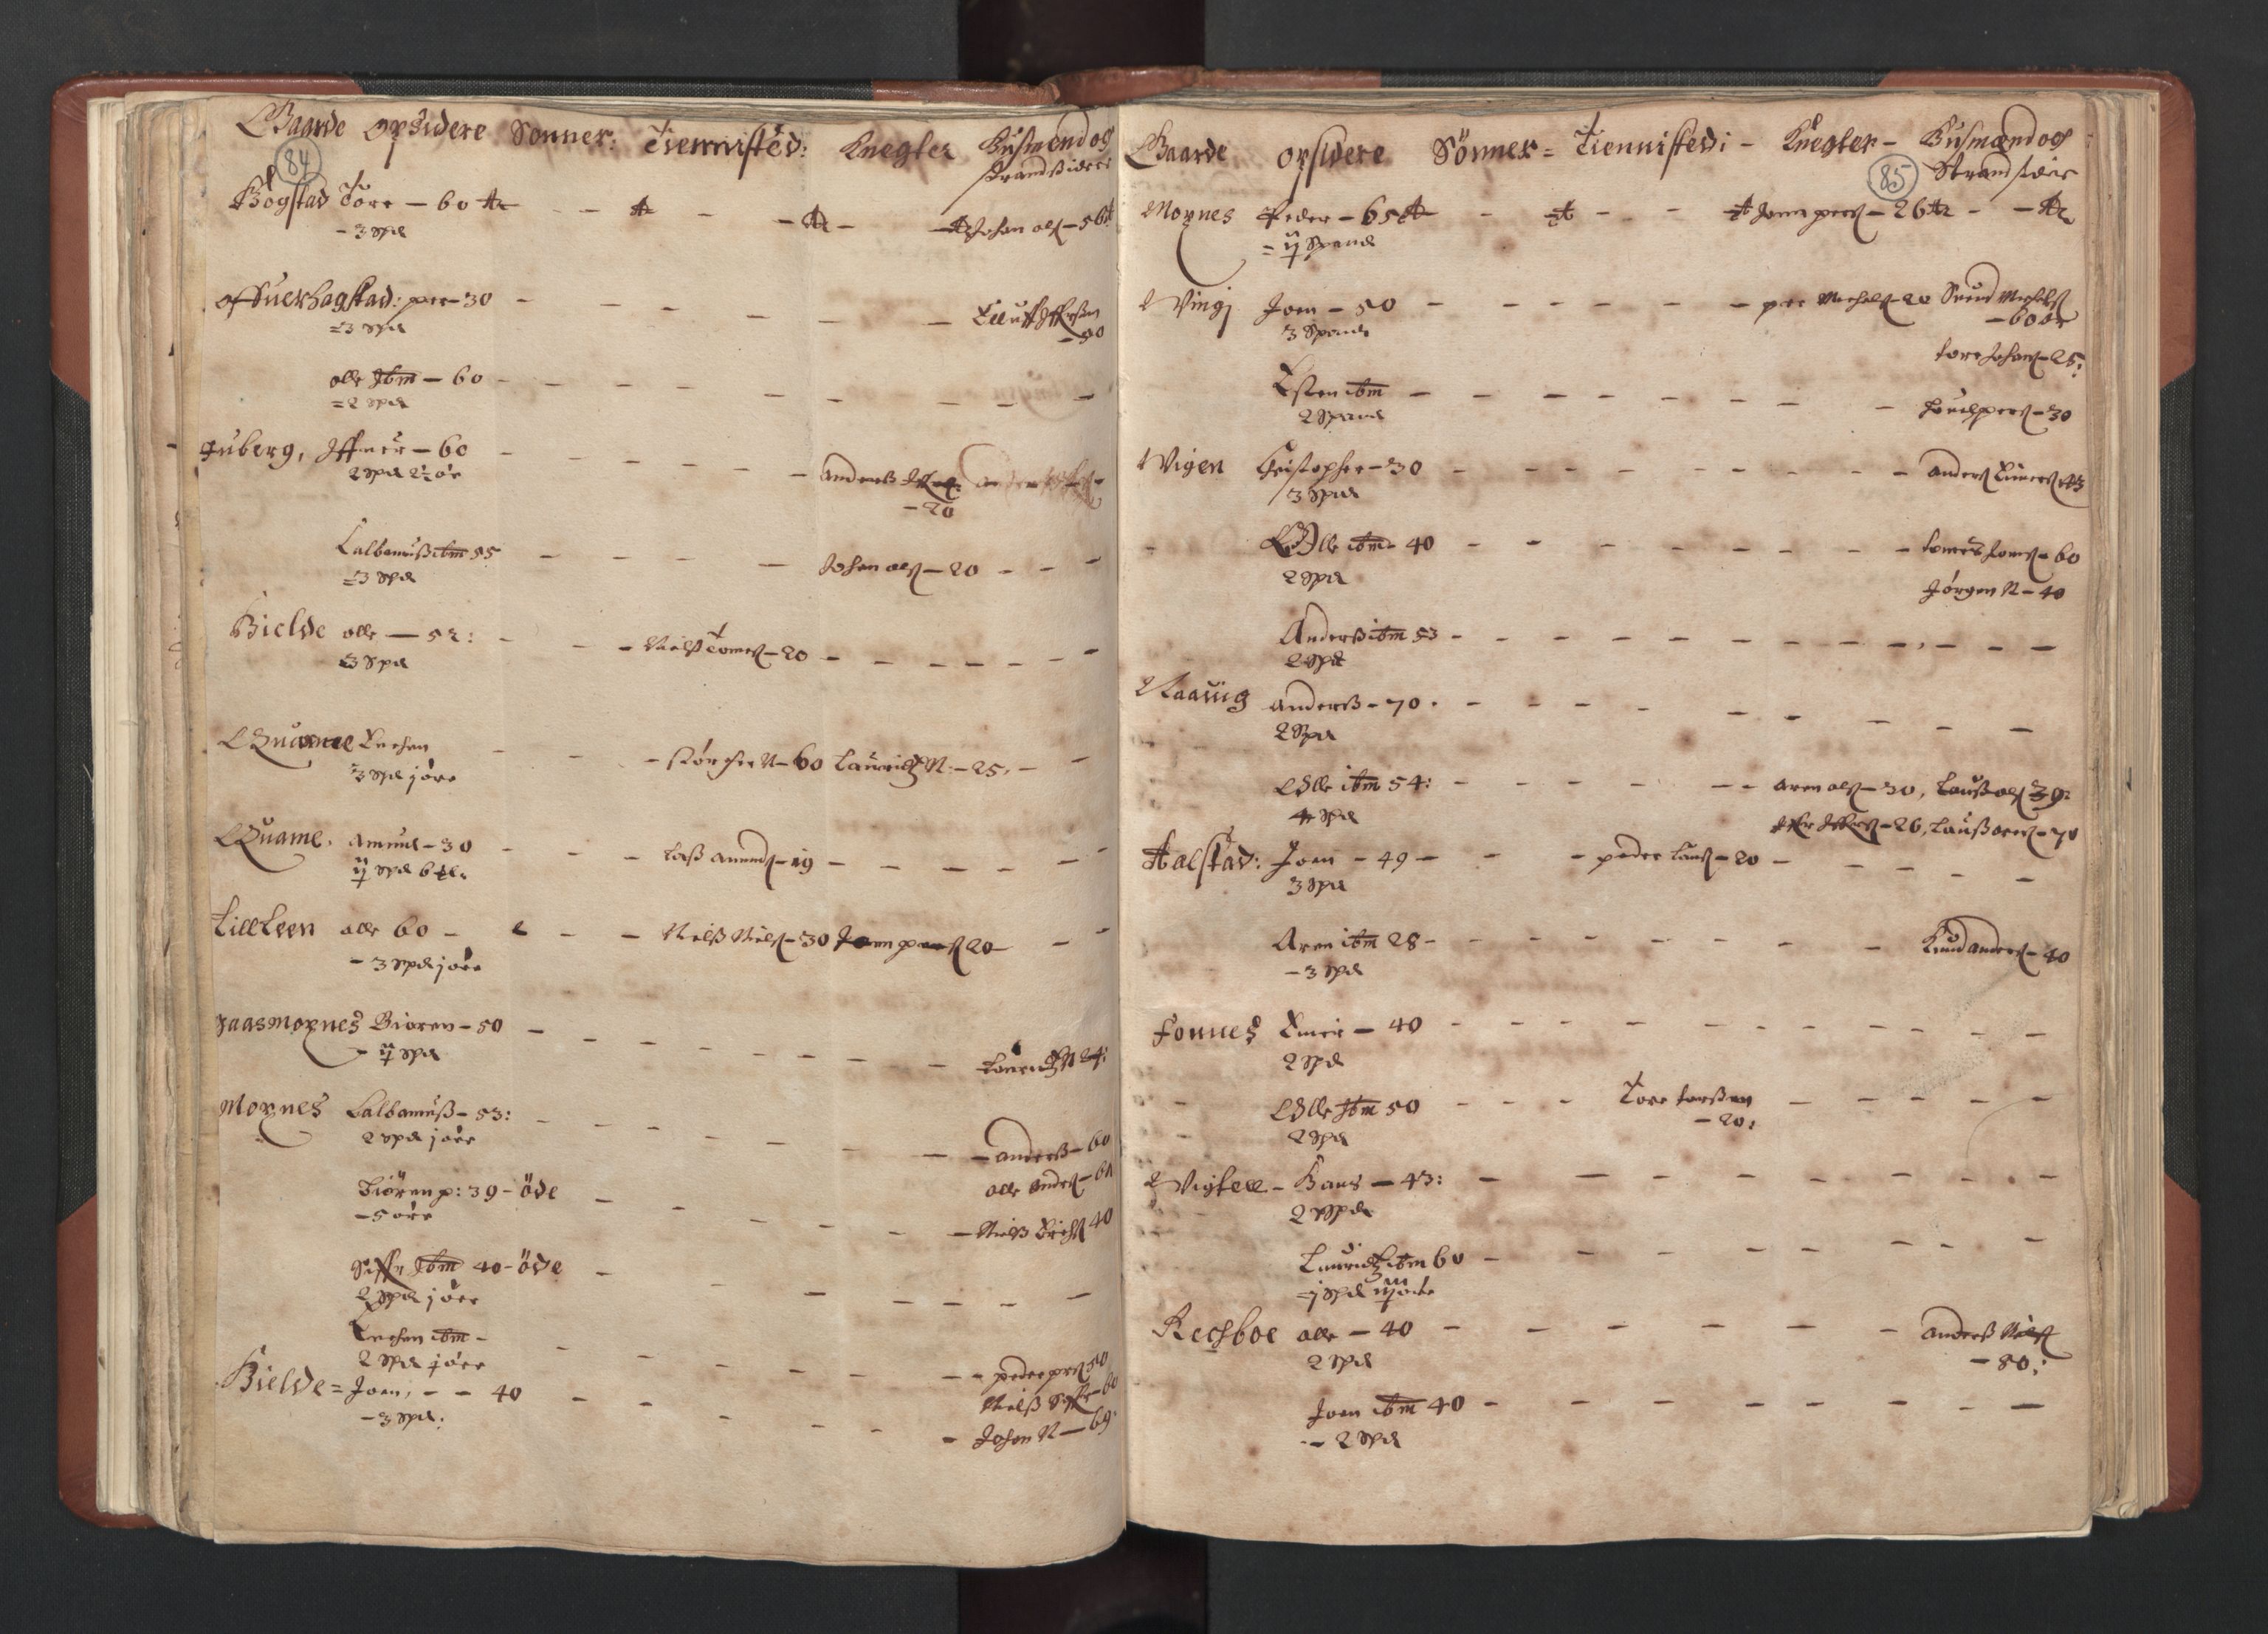 RA, Fogdenes og sorenskrivernes manntall 1664-1666, nr. 19: Fosen fogderi, Inderøy fogderi, Selbu fogderi, Namdal fogderi og Stjørdal fogderi, 1664-1665, s. 84-85